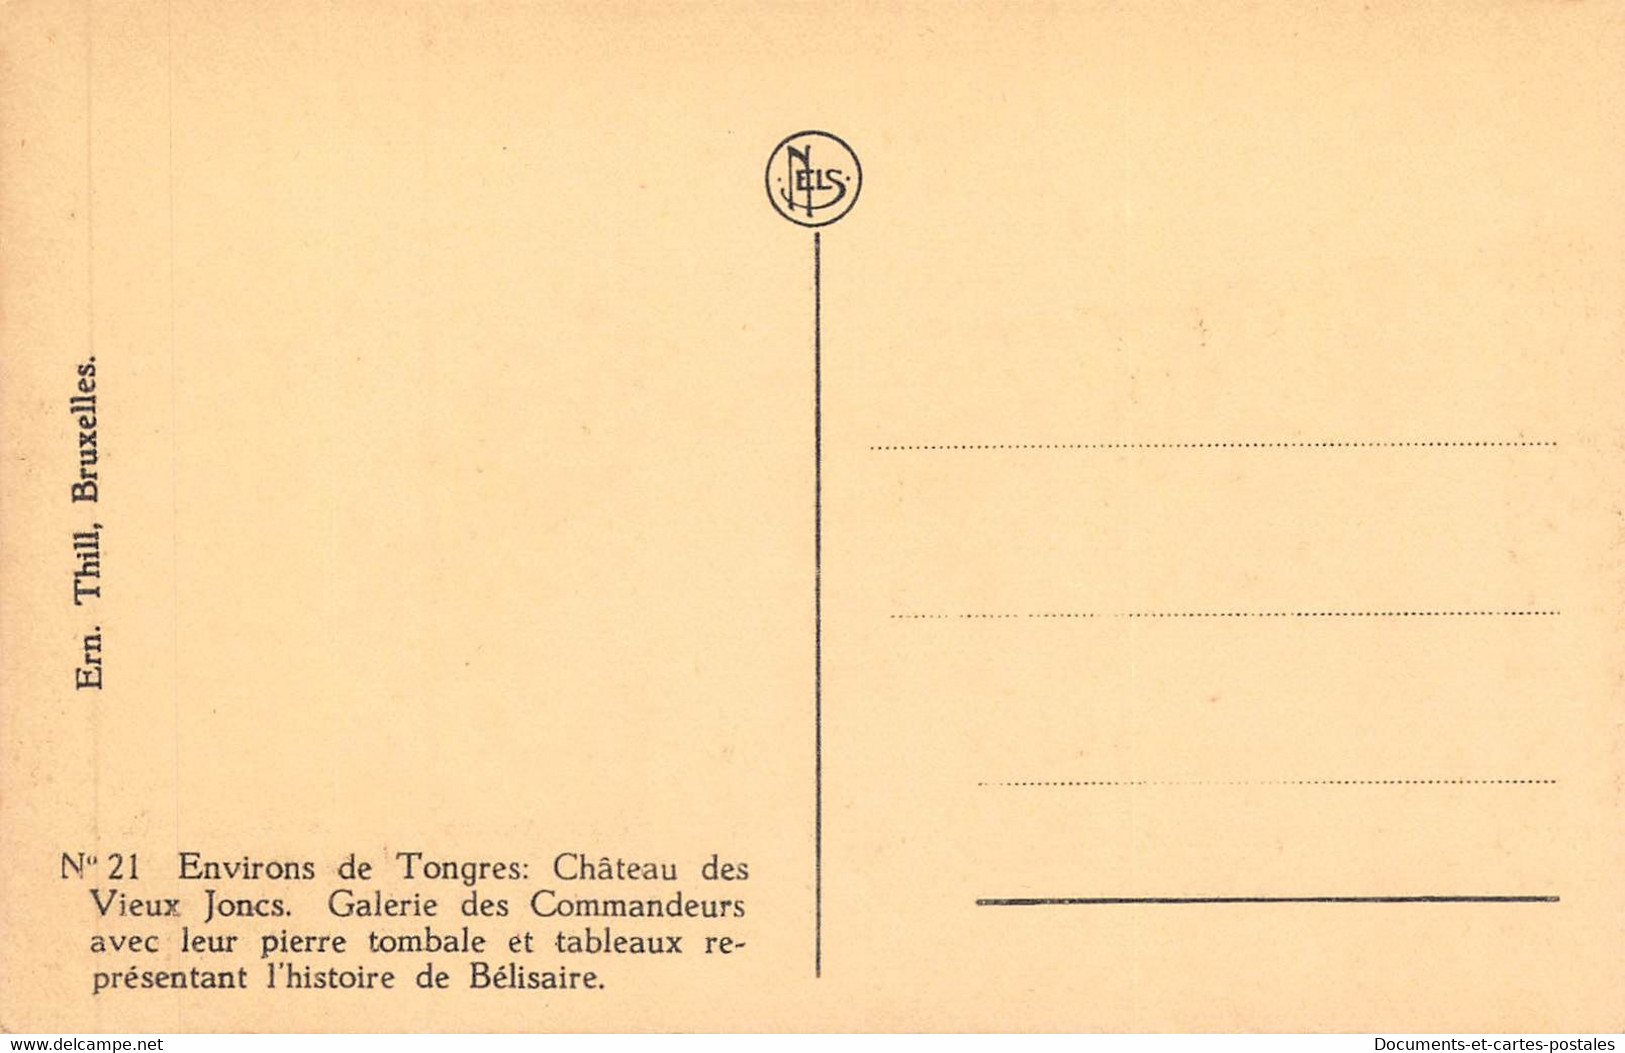 Série de X 28 Carte postale ancienne Belgique - Environs de Tongres Château des Vieux Joncs